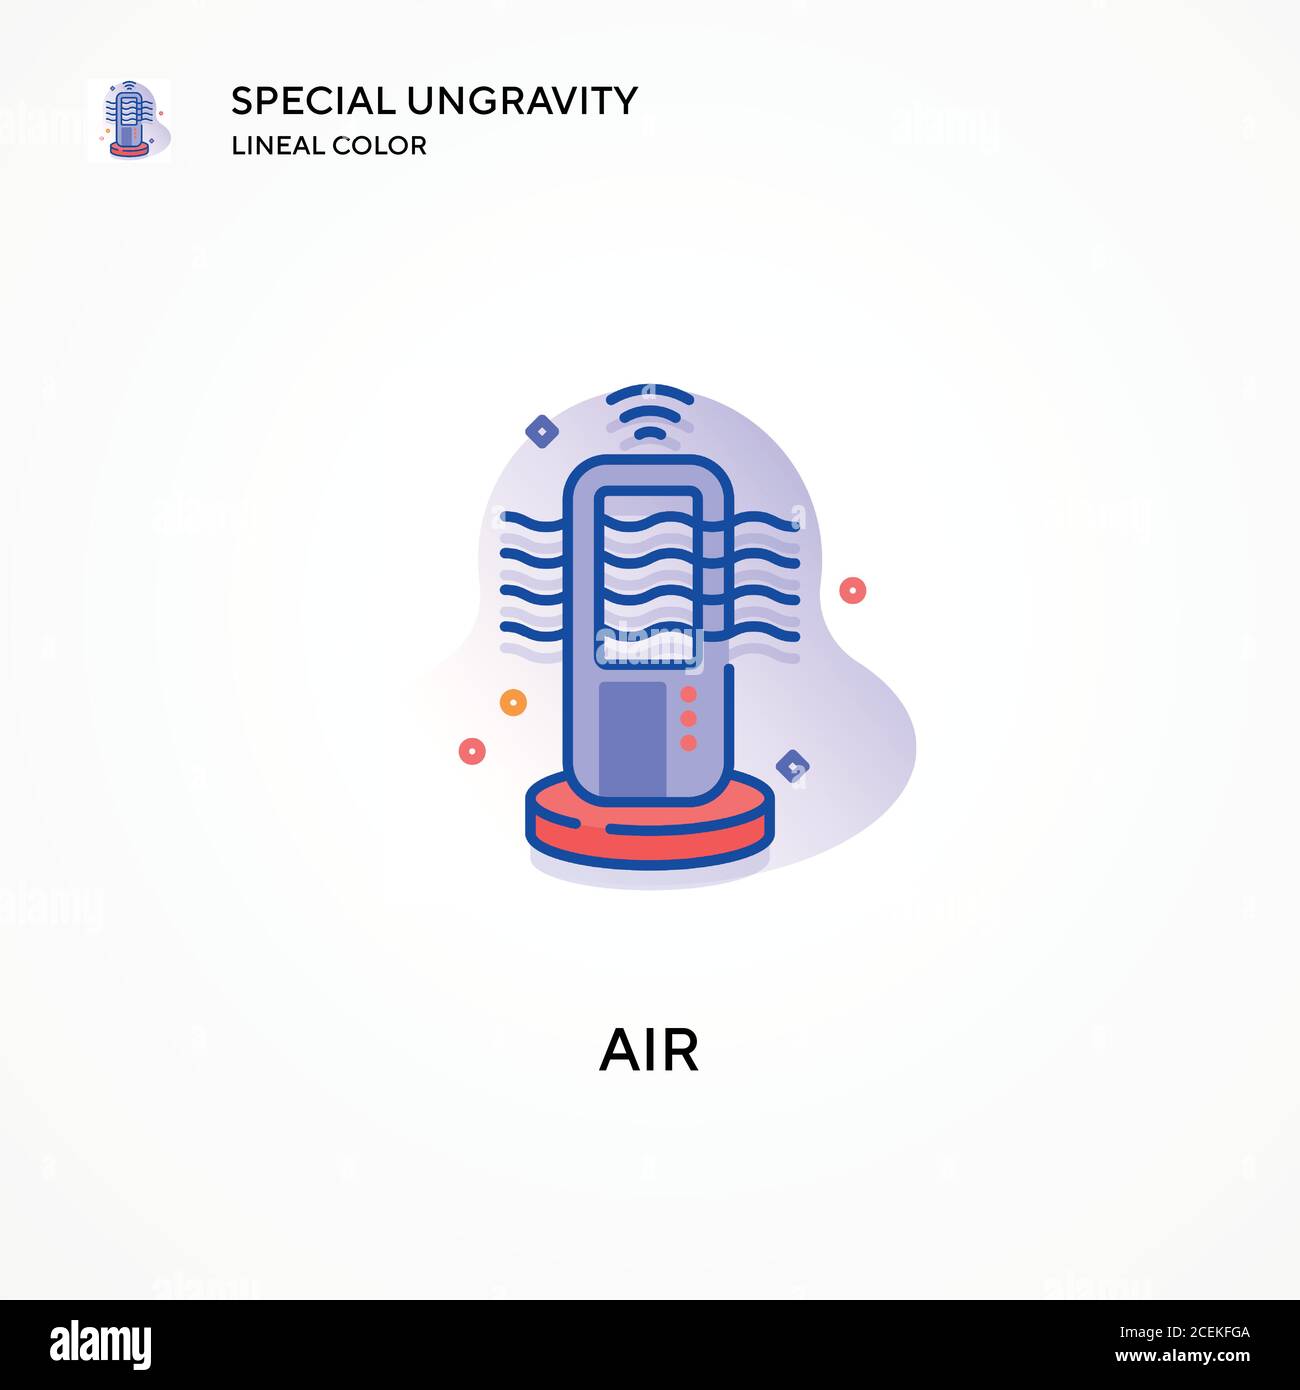 Icona di colore lineare Air Special Ungravity. Concetti moderni di illustrazione vettoriale. Facile da modificare e personalizzare. Illustrazione Vettoriale